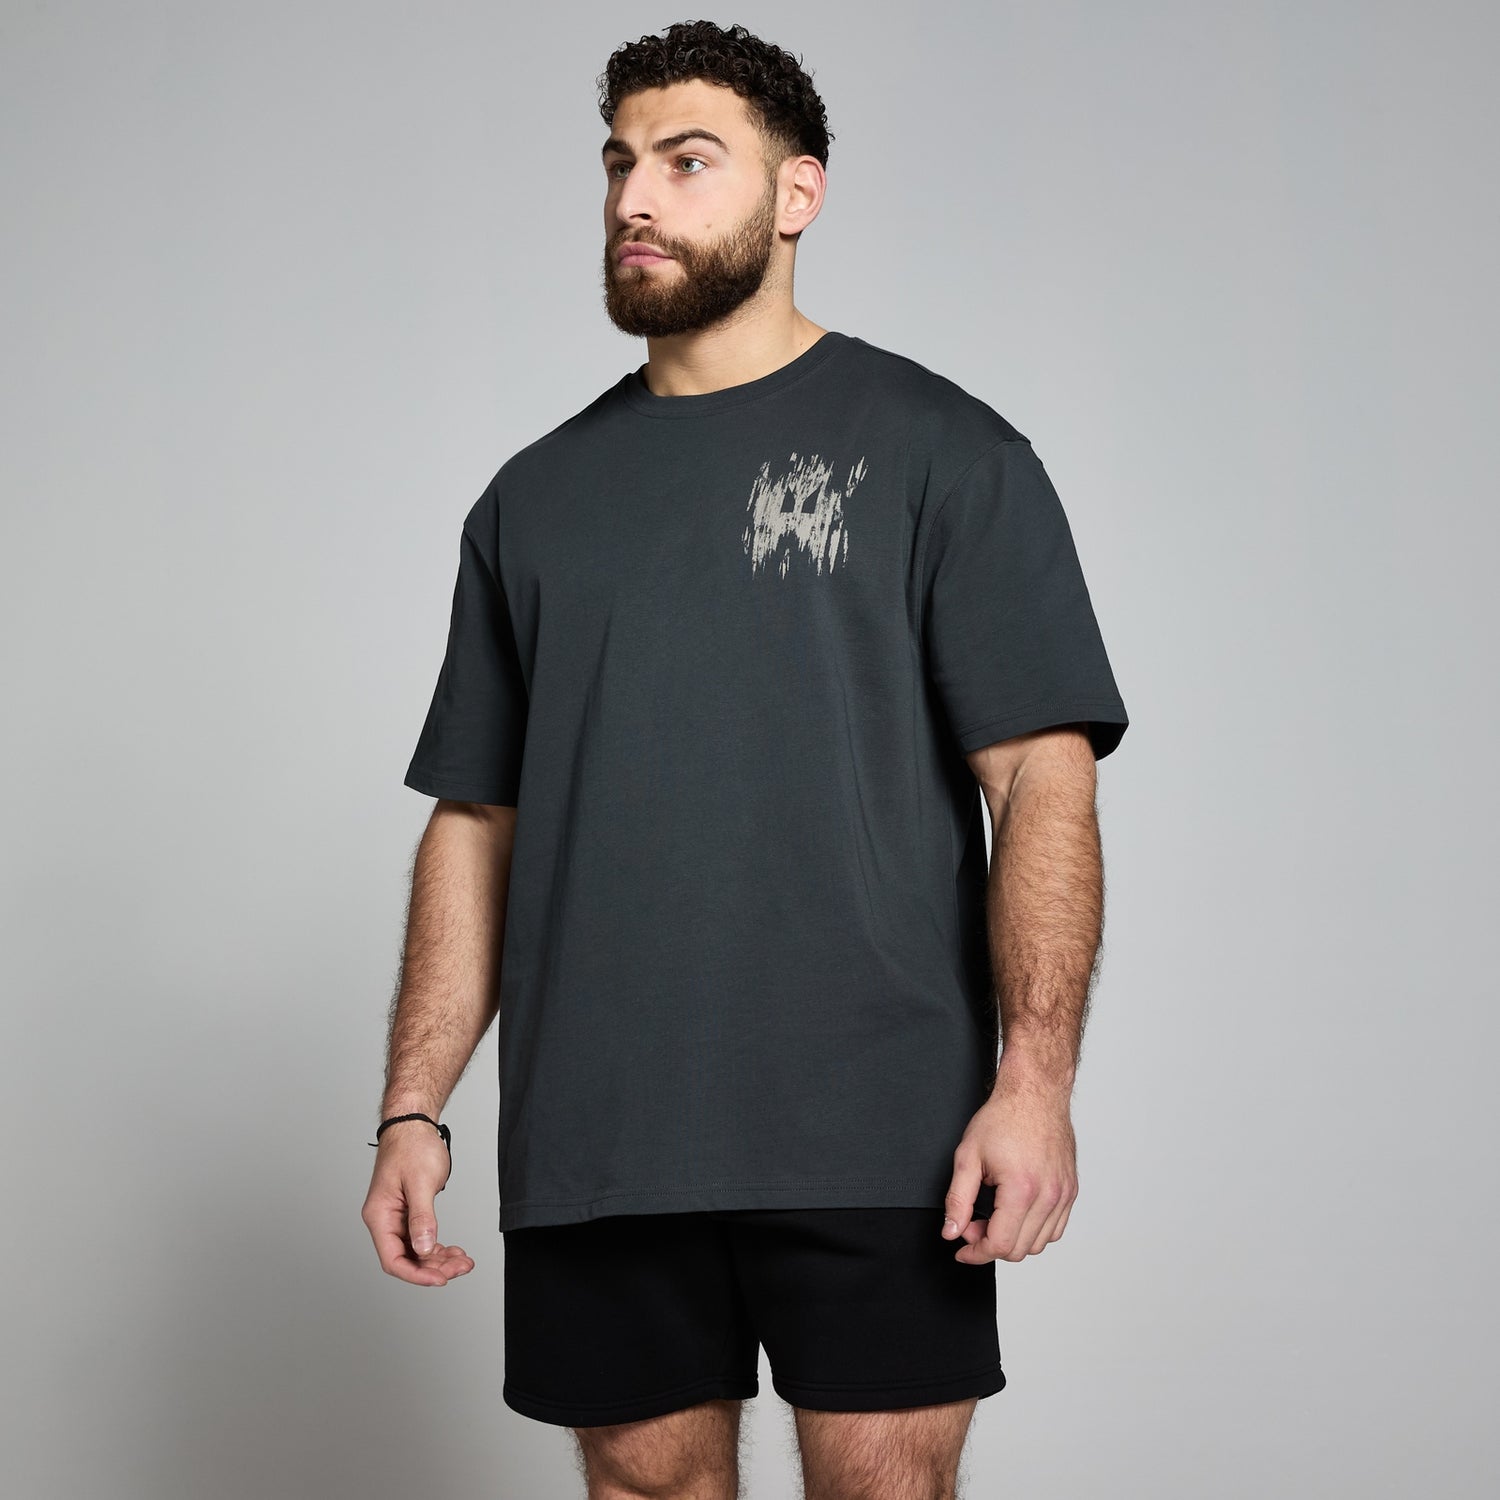 Camiseta con estampado gráfico Clay de MP - Negro lavado - XXS-XS